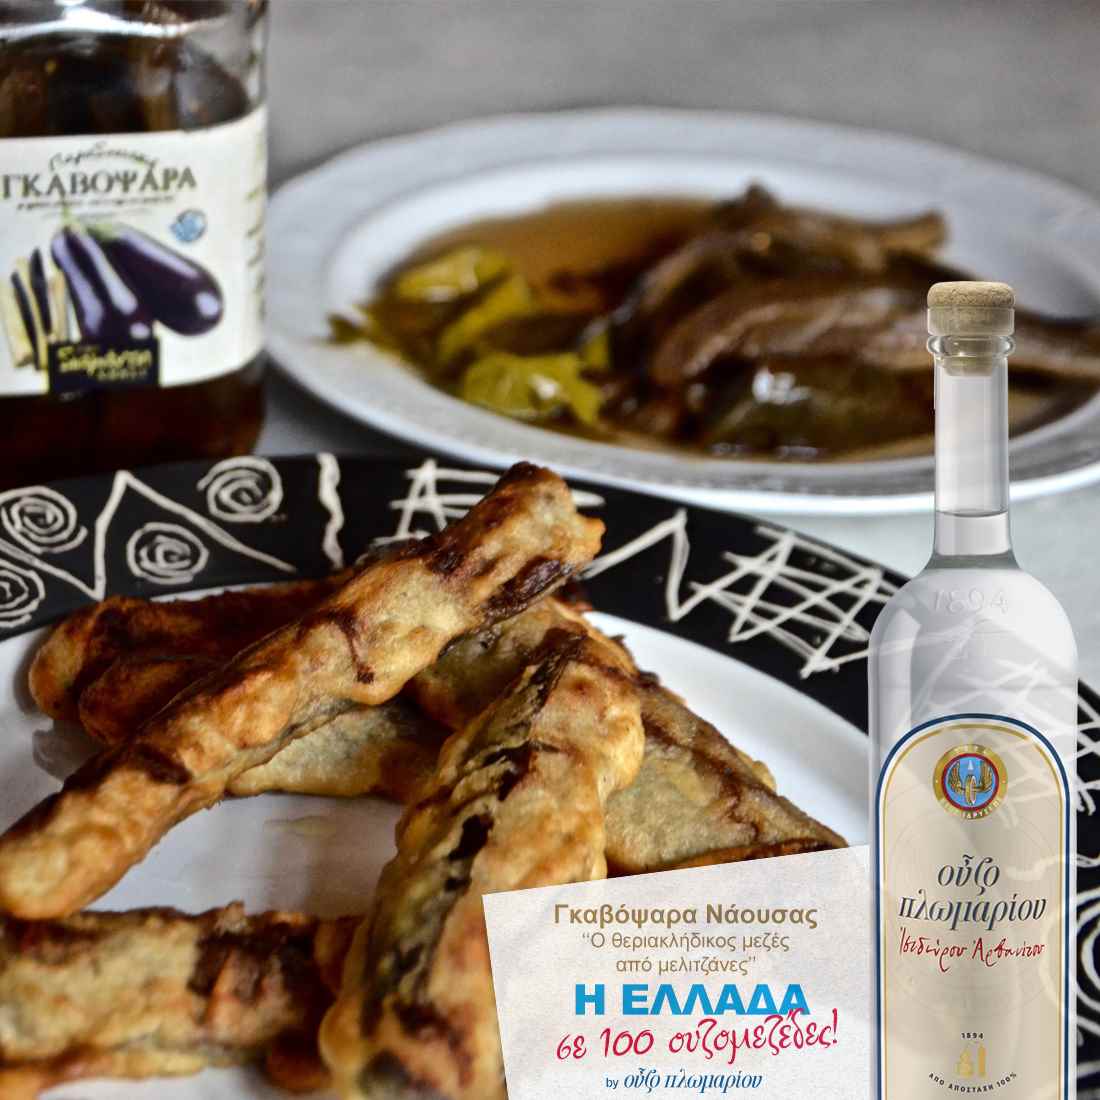 Gavopsara Naoussa - Ouzomezedes - Griechischer Gastronomieführer